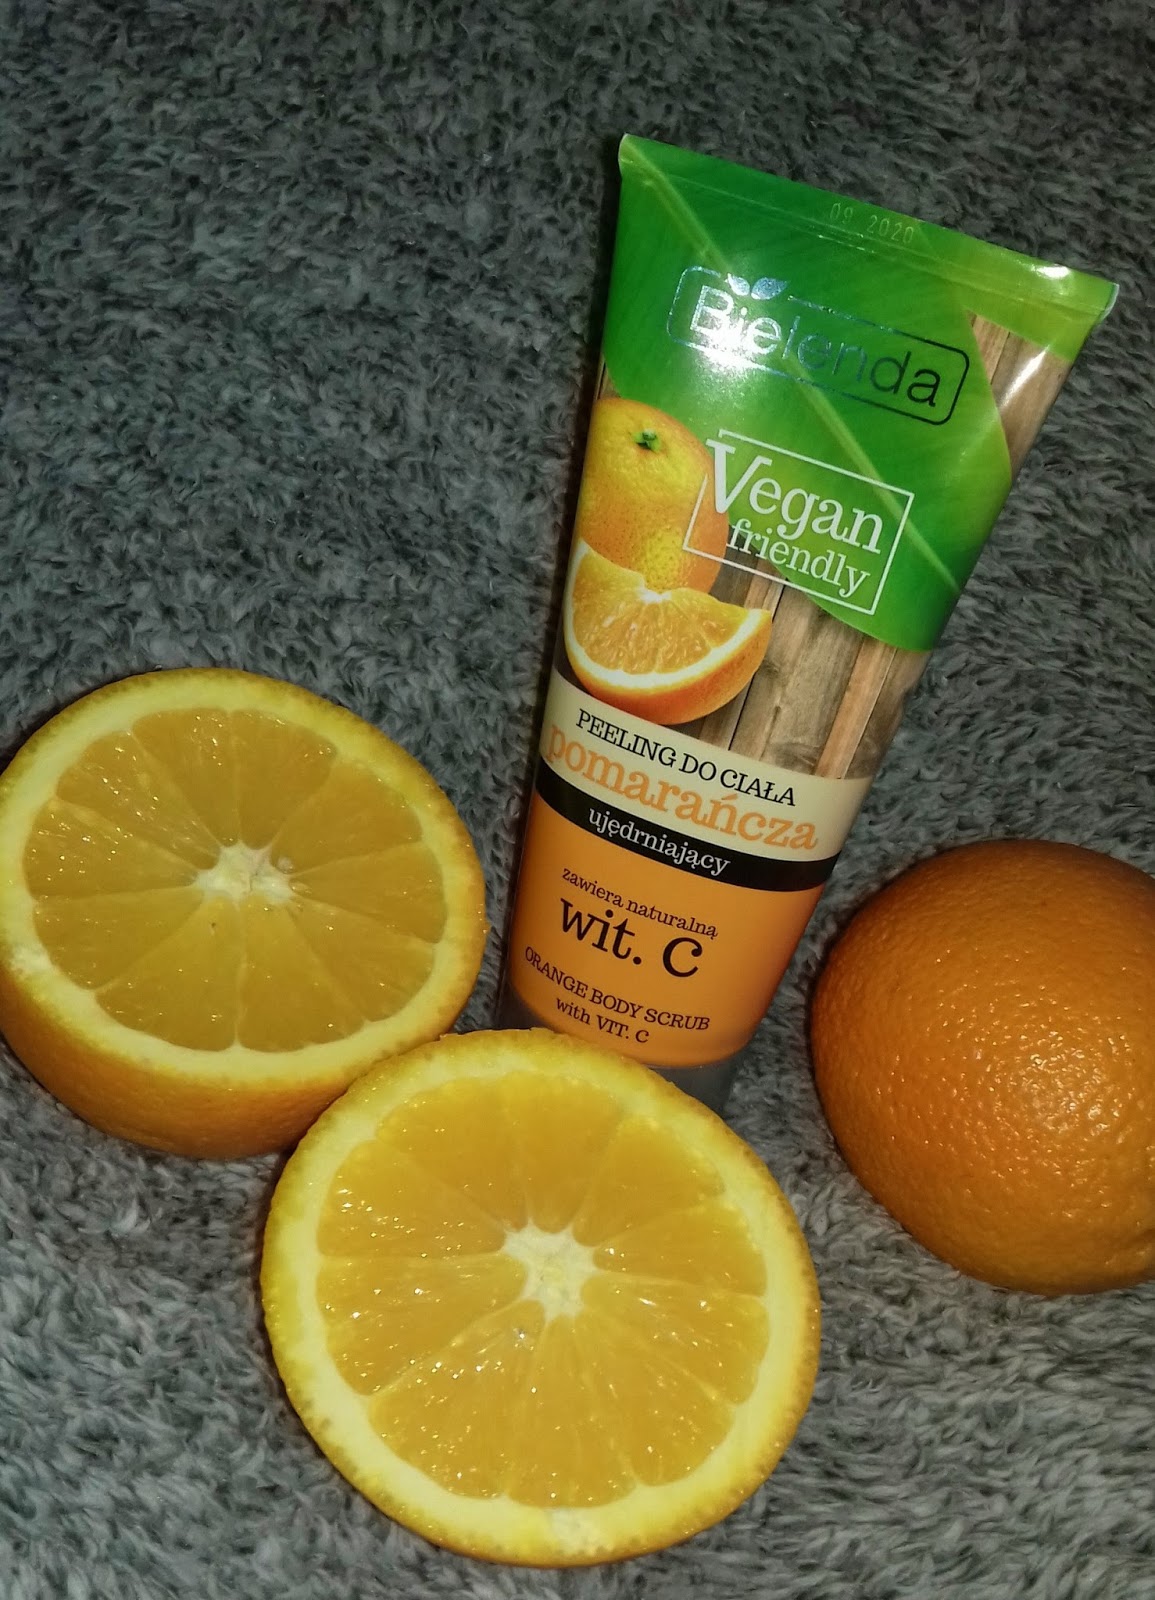 Bielenda vegan friendly peeling do ciała ujędrniający pomarańcza z witaminą C